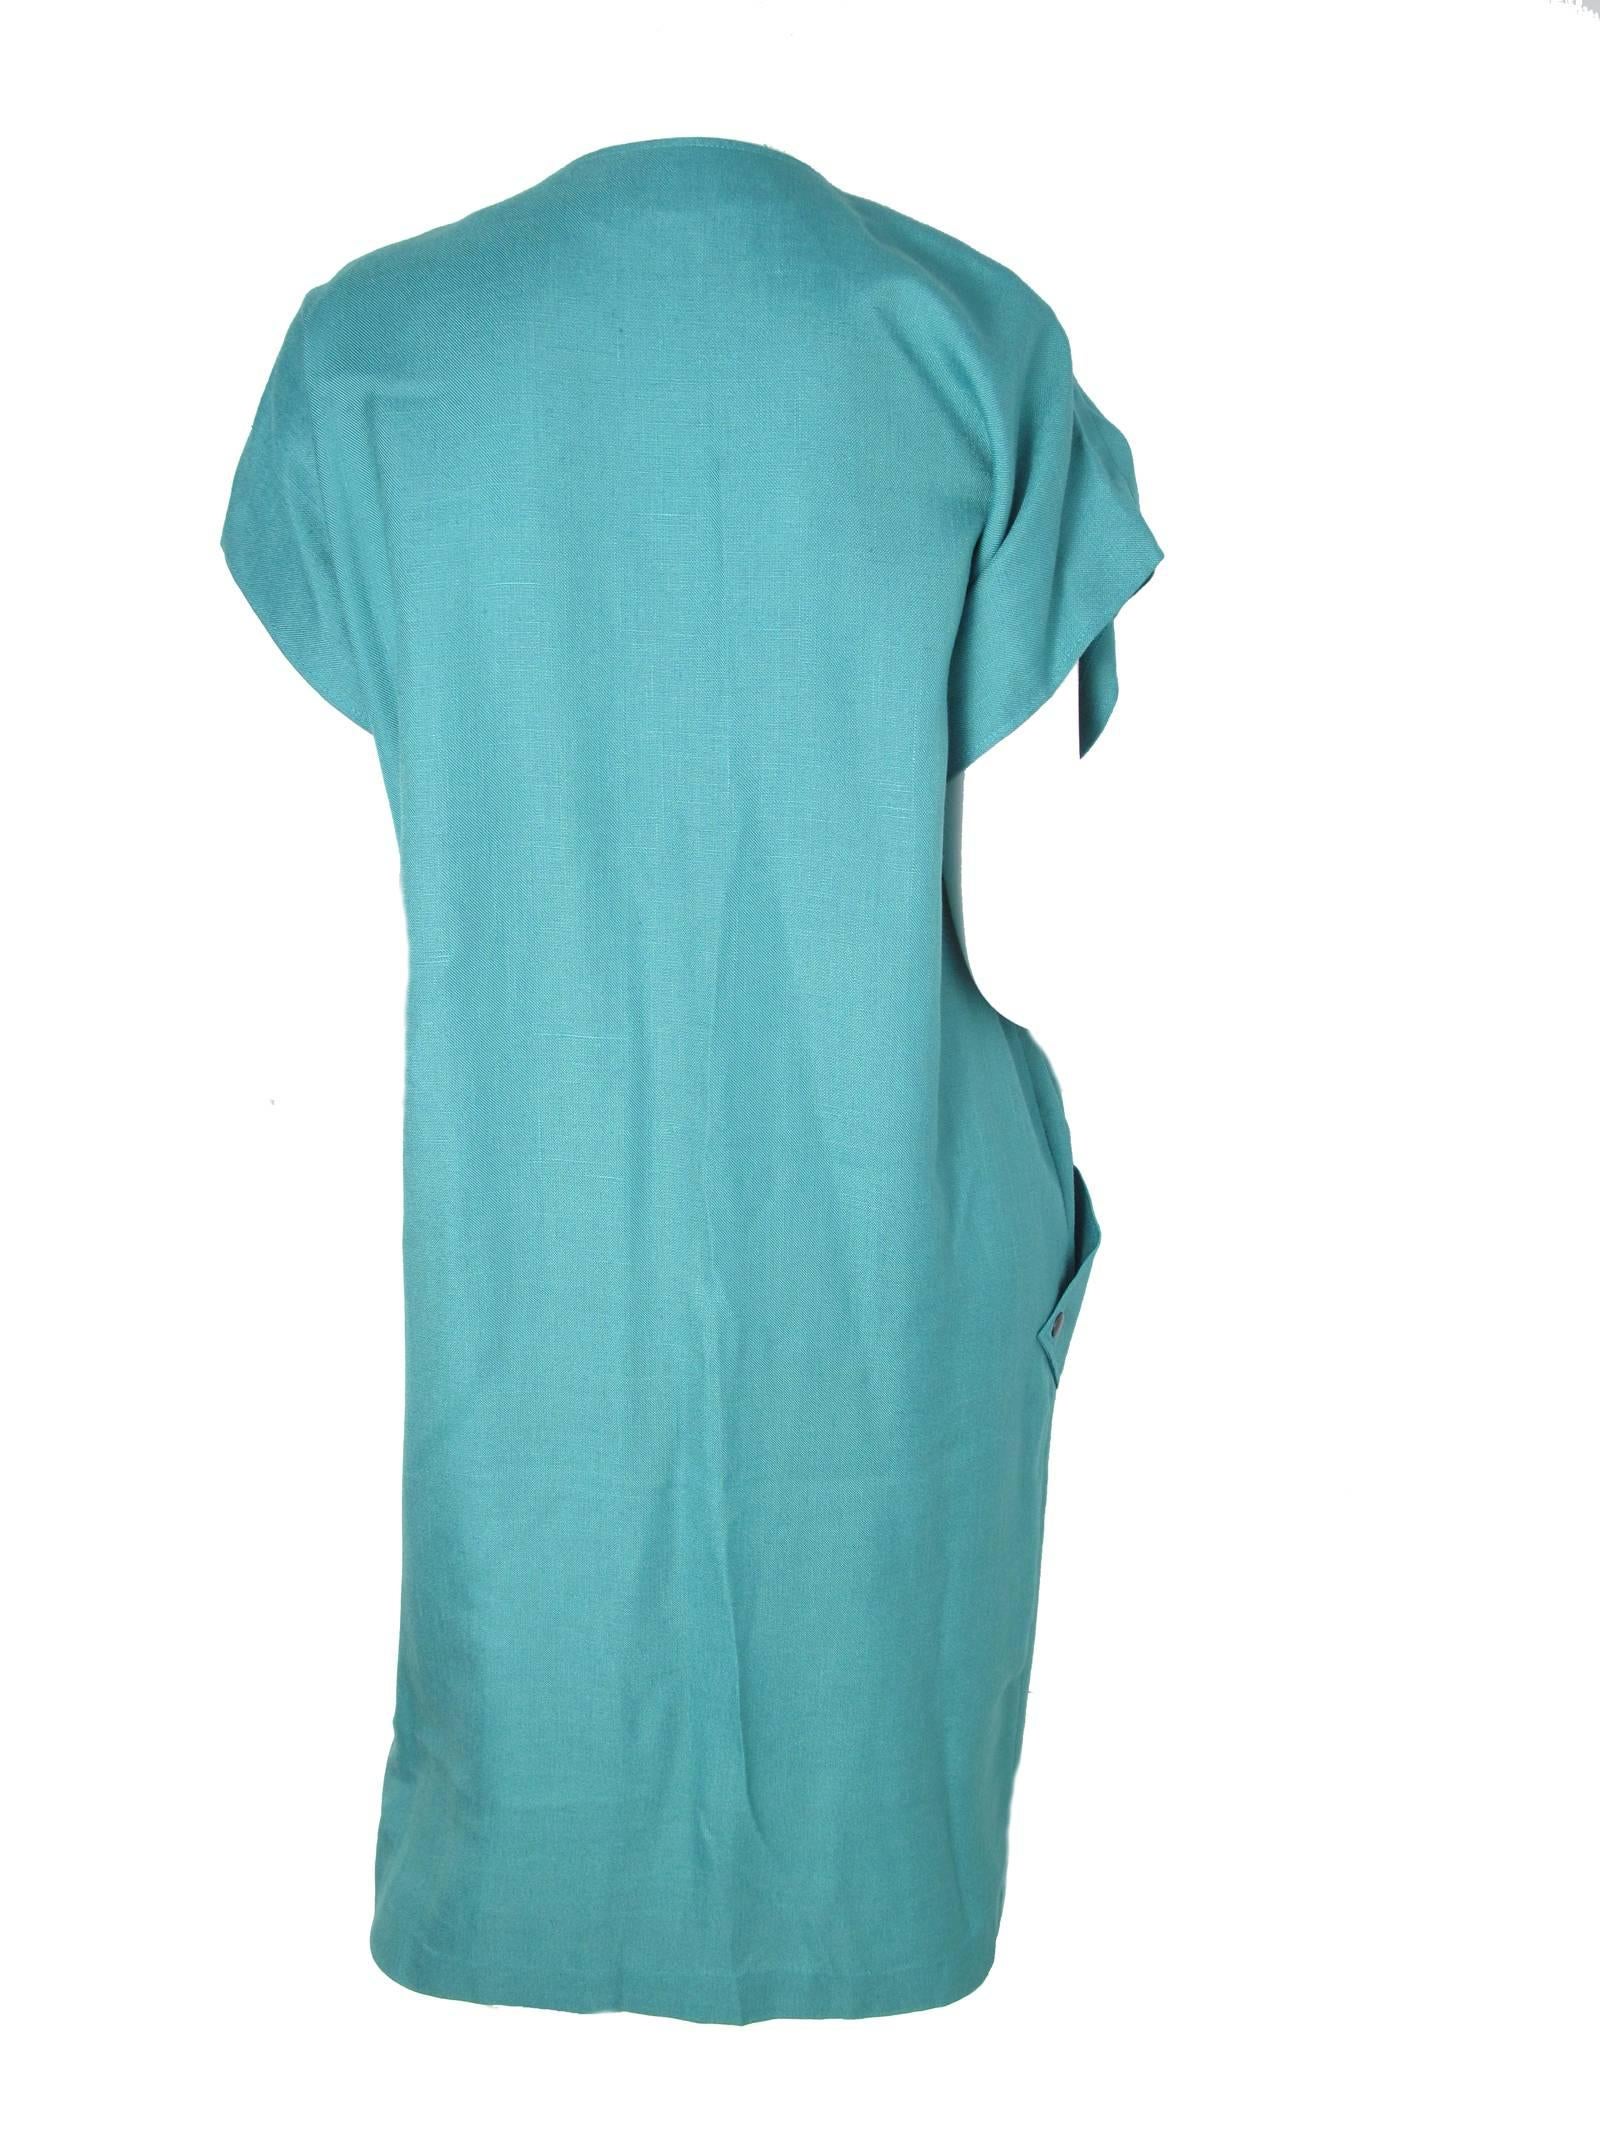 Blue Pierre Cardin Linen Dress Large Pockets 